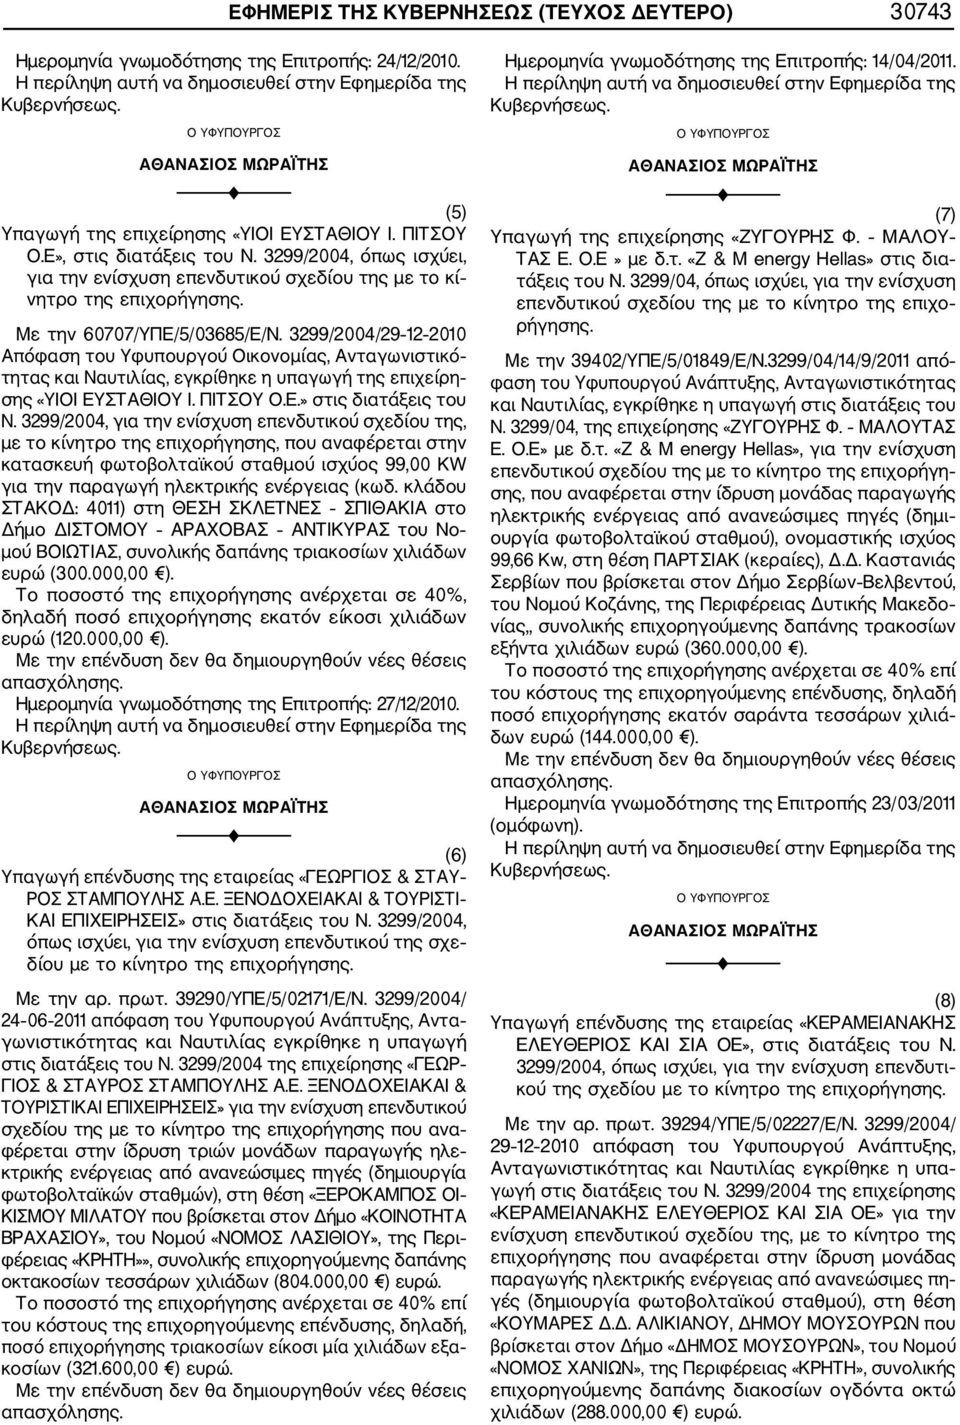 3299/2004/29 12 2010 Απόφαση του Υφυπουργού Οικονομίας, Ανταγωνιστικό τητας και Ναυτιλίας, εγκρίθηκε η υπαγωγή της επιχείρη σης «ΥΙΟΙ ΕΥΣΤΑΘΙΟΥ Ι. ΠΙΤΣΟΥ Ο.Ε.» στις διατάξεις του Ν.